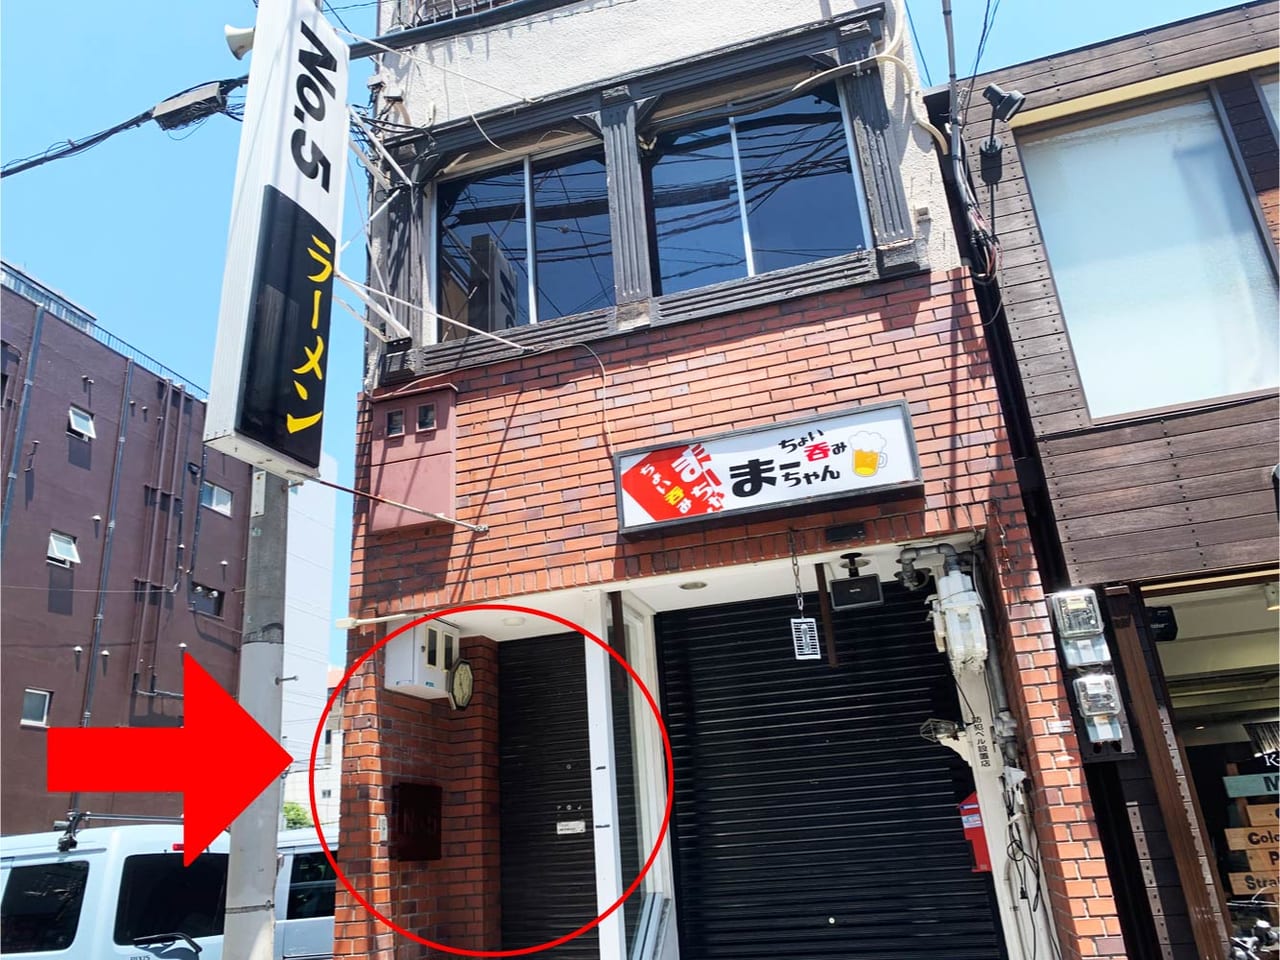 堺市堺区 堺東におしゃれな居酒屋 No 5 がオープンしていました 号外net 堺市堺区 西区